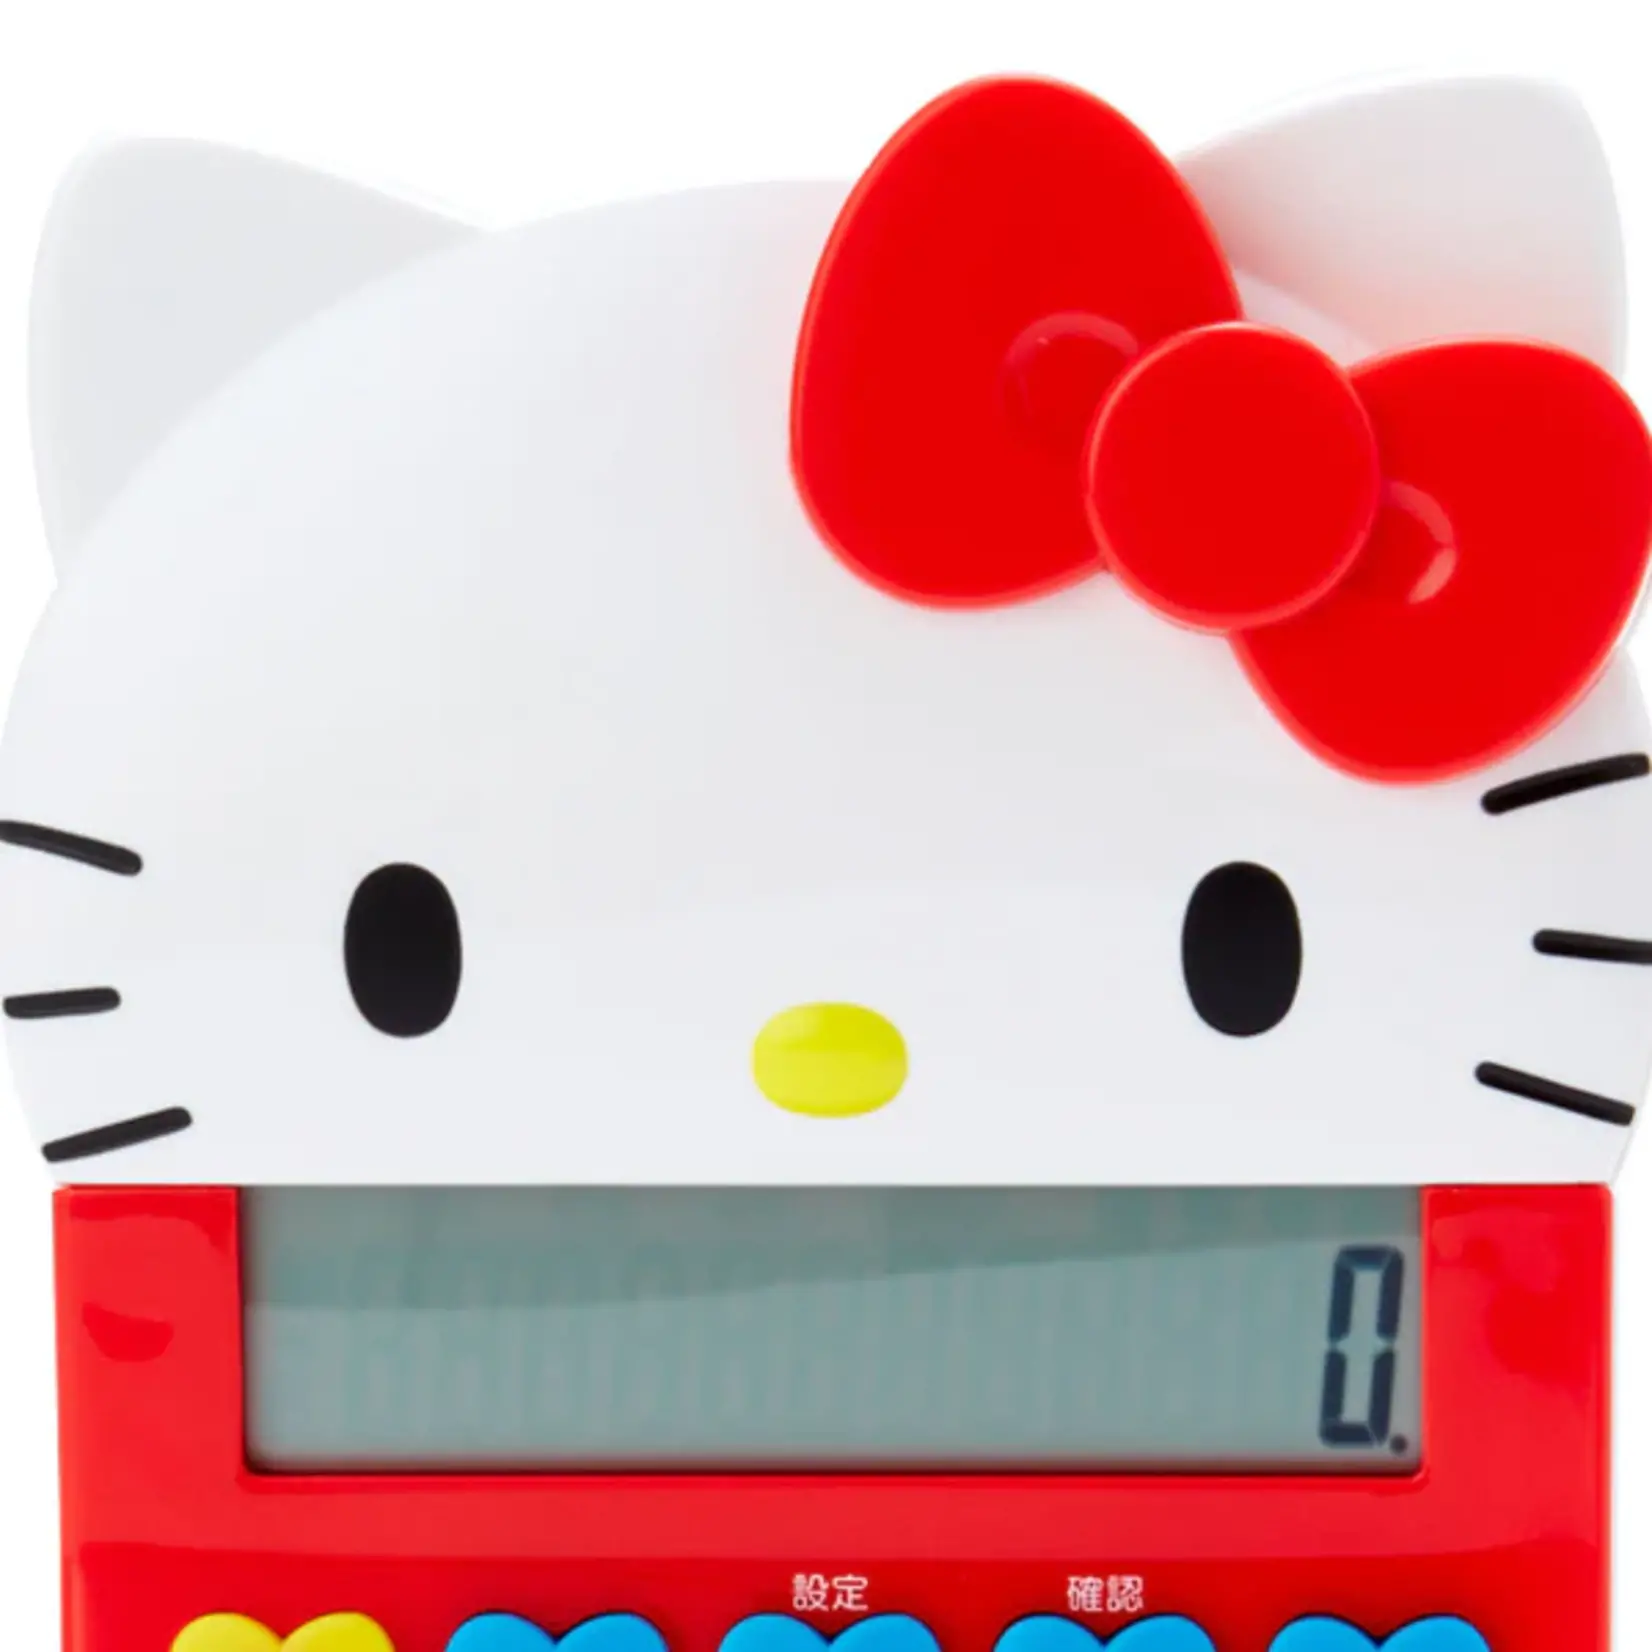 Sanrio Hello Kitty Calculator